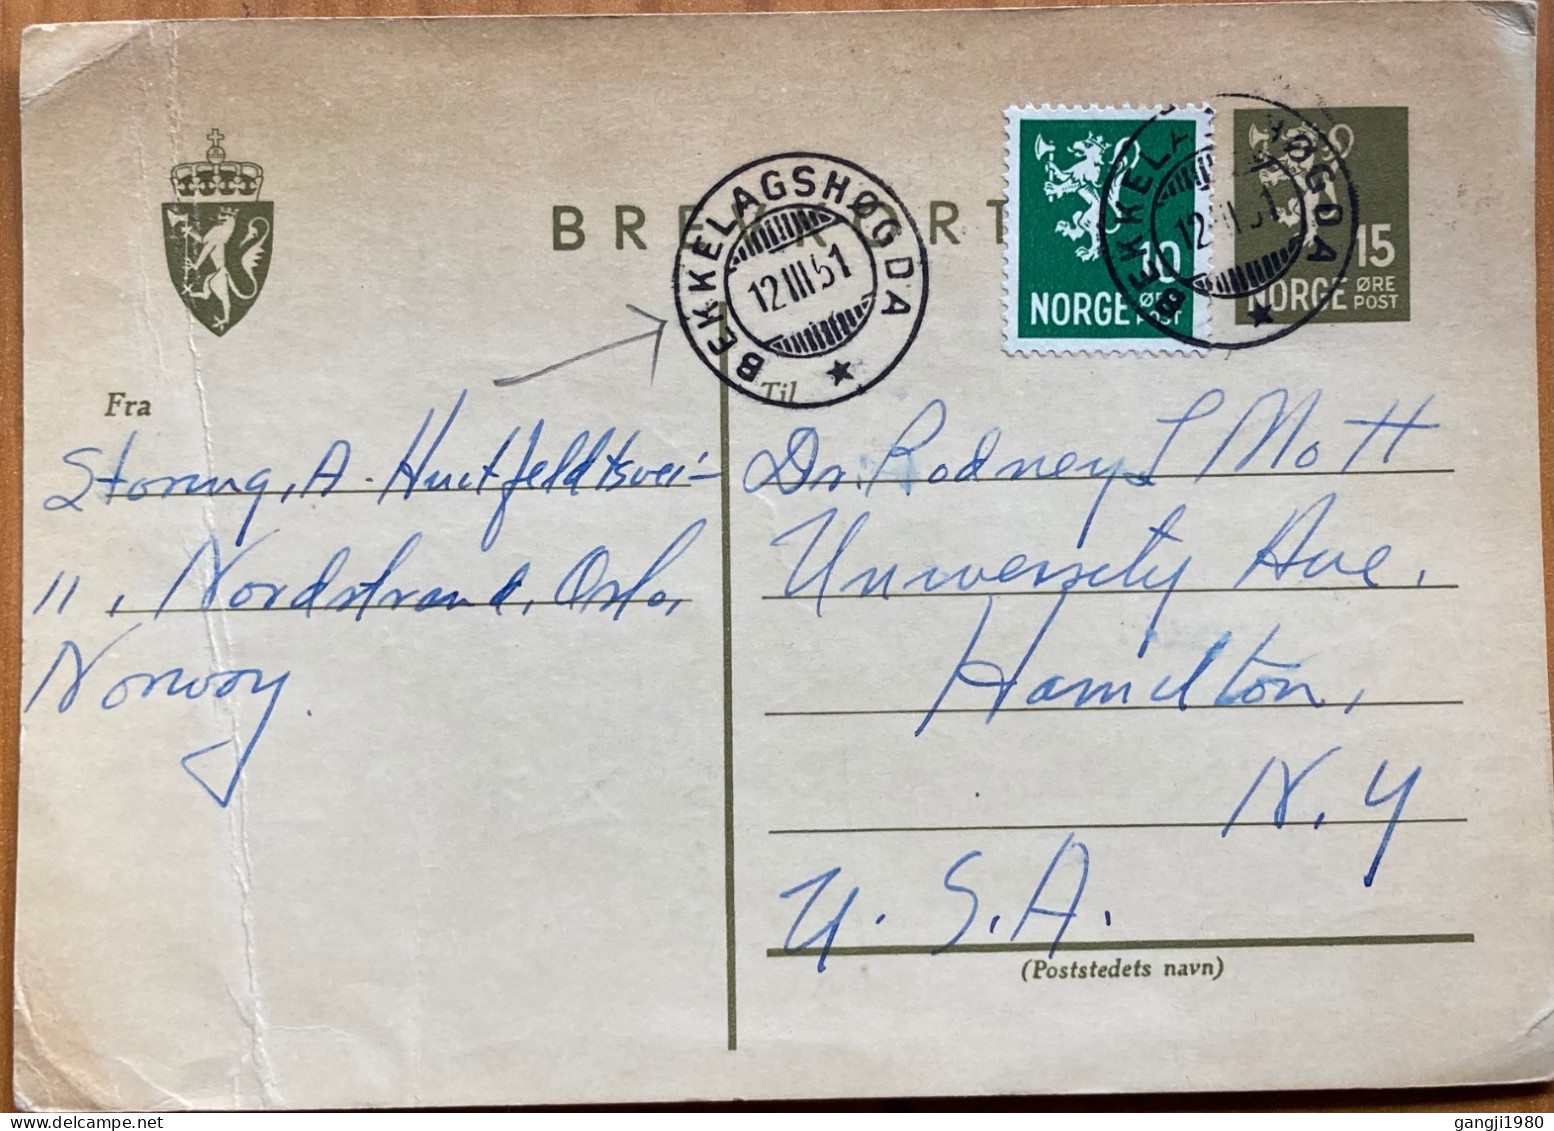 NORWAY 1951, POSTAL STATIONERY CARD, ILLUSTRATE, LION RAMPANT, USED TO USA, BEKKELAGSHOGDA CITY CANCEL. - Briefe U. Dokumente